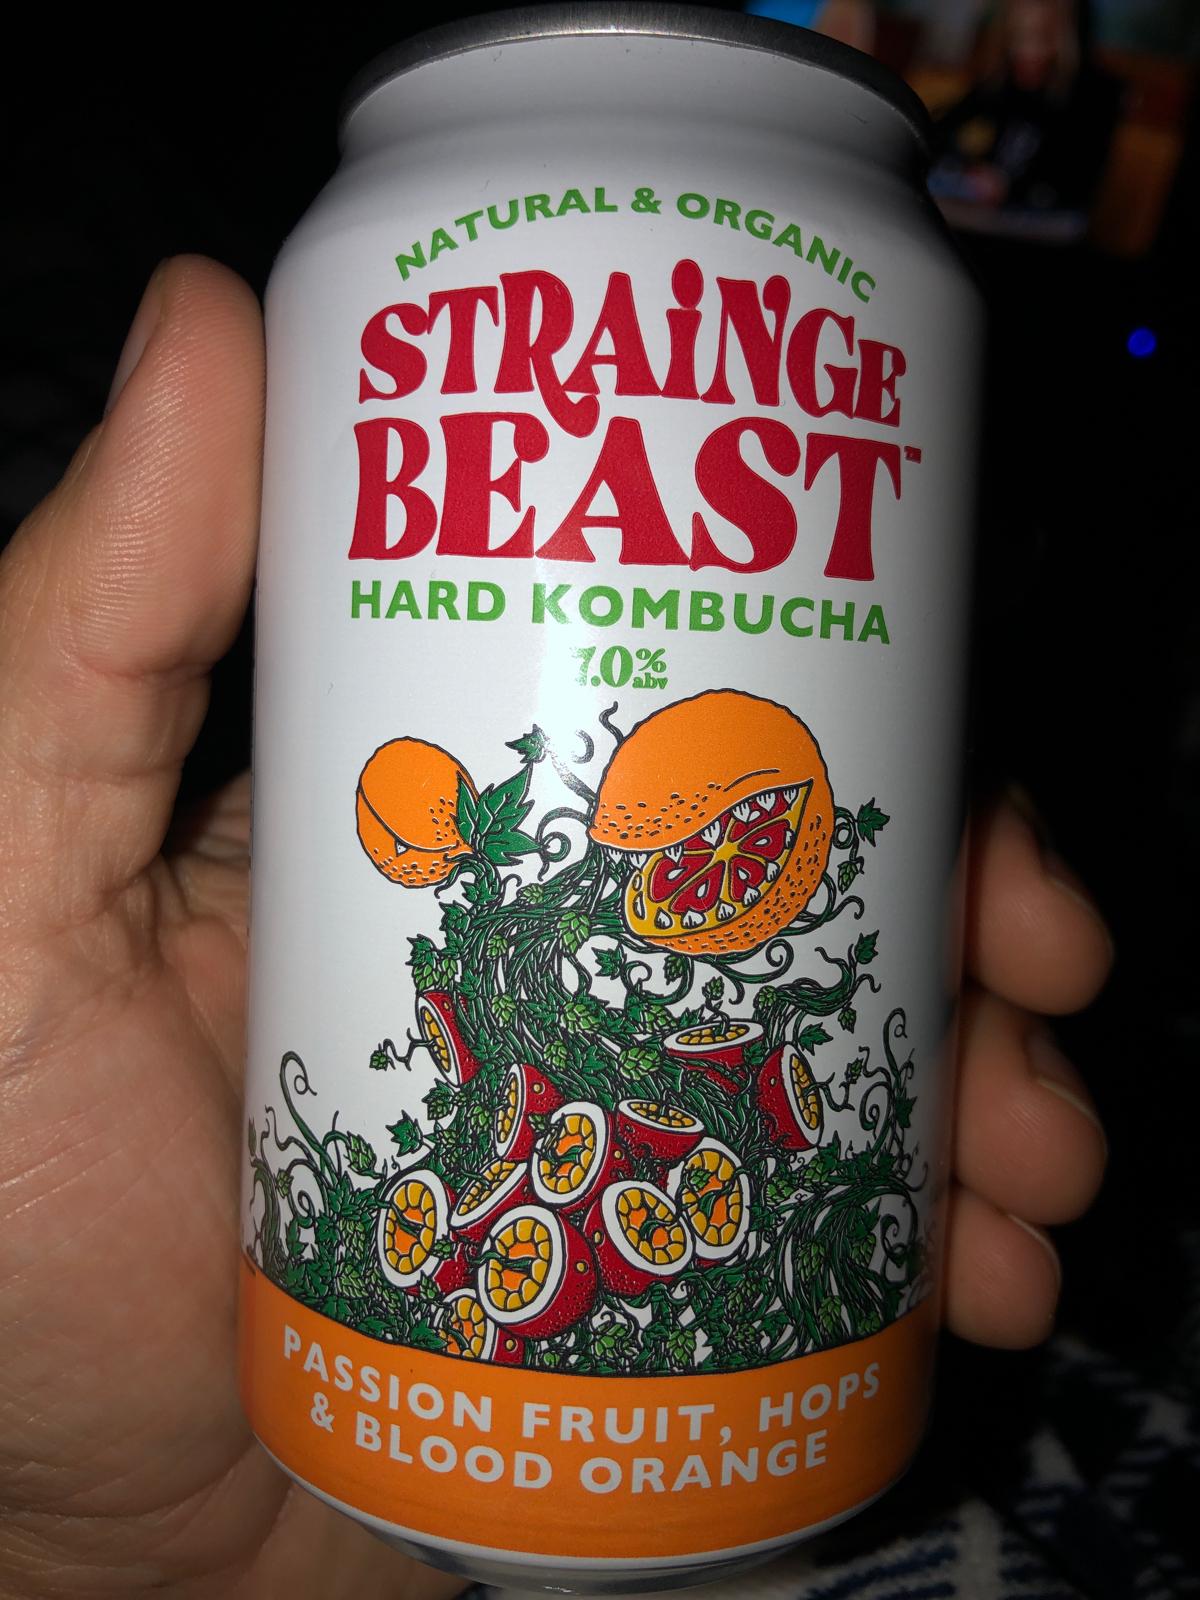 Strainge Beast - Hard Kombucha with Passion Fruit, Hops, And Blood Orange